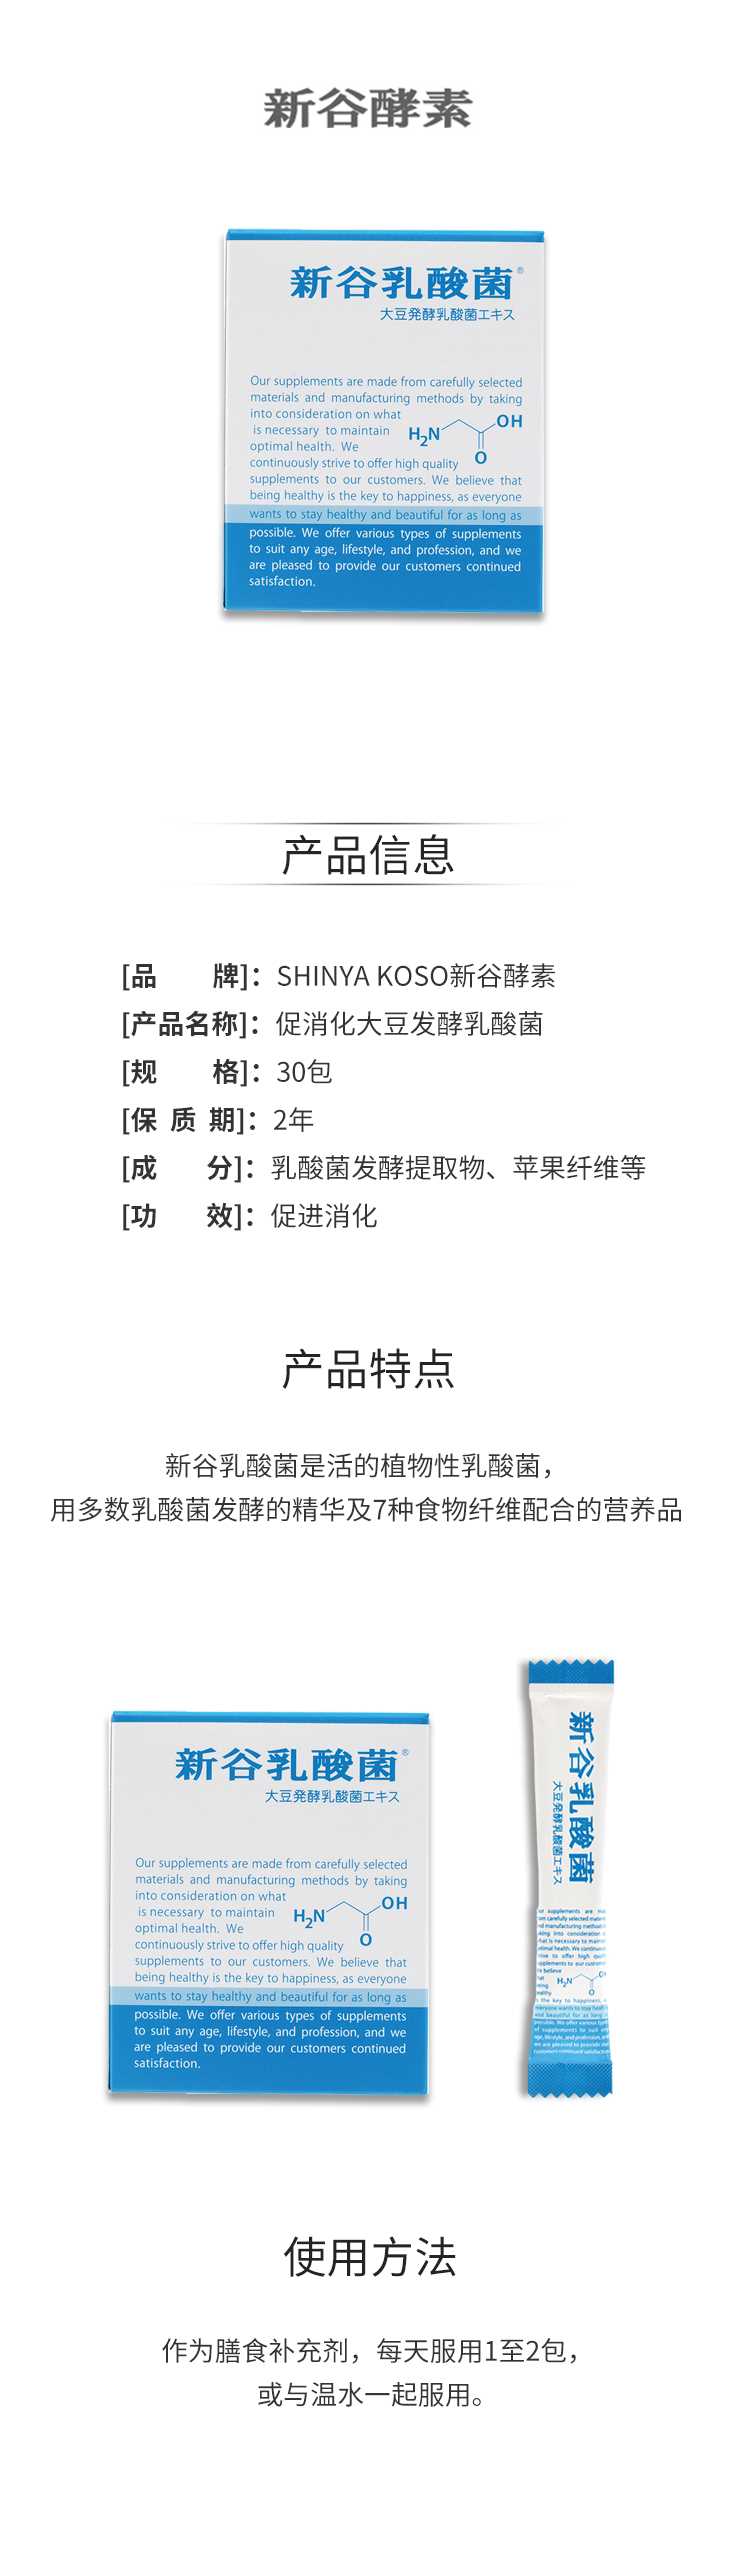 【日版】SHINYA-KOSO新谷酵素-促消化大豆发酵乳酸菌30包.jpg